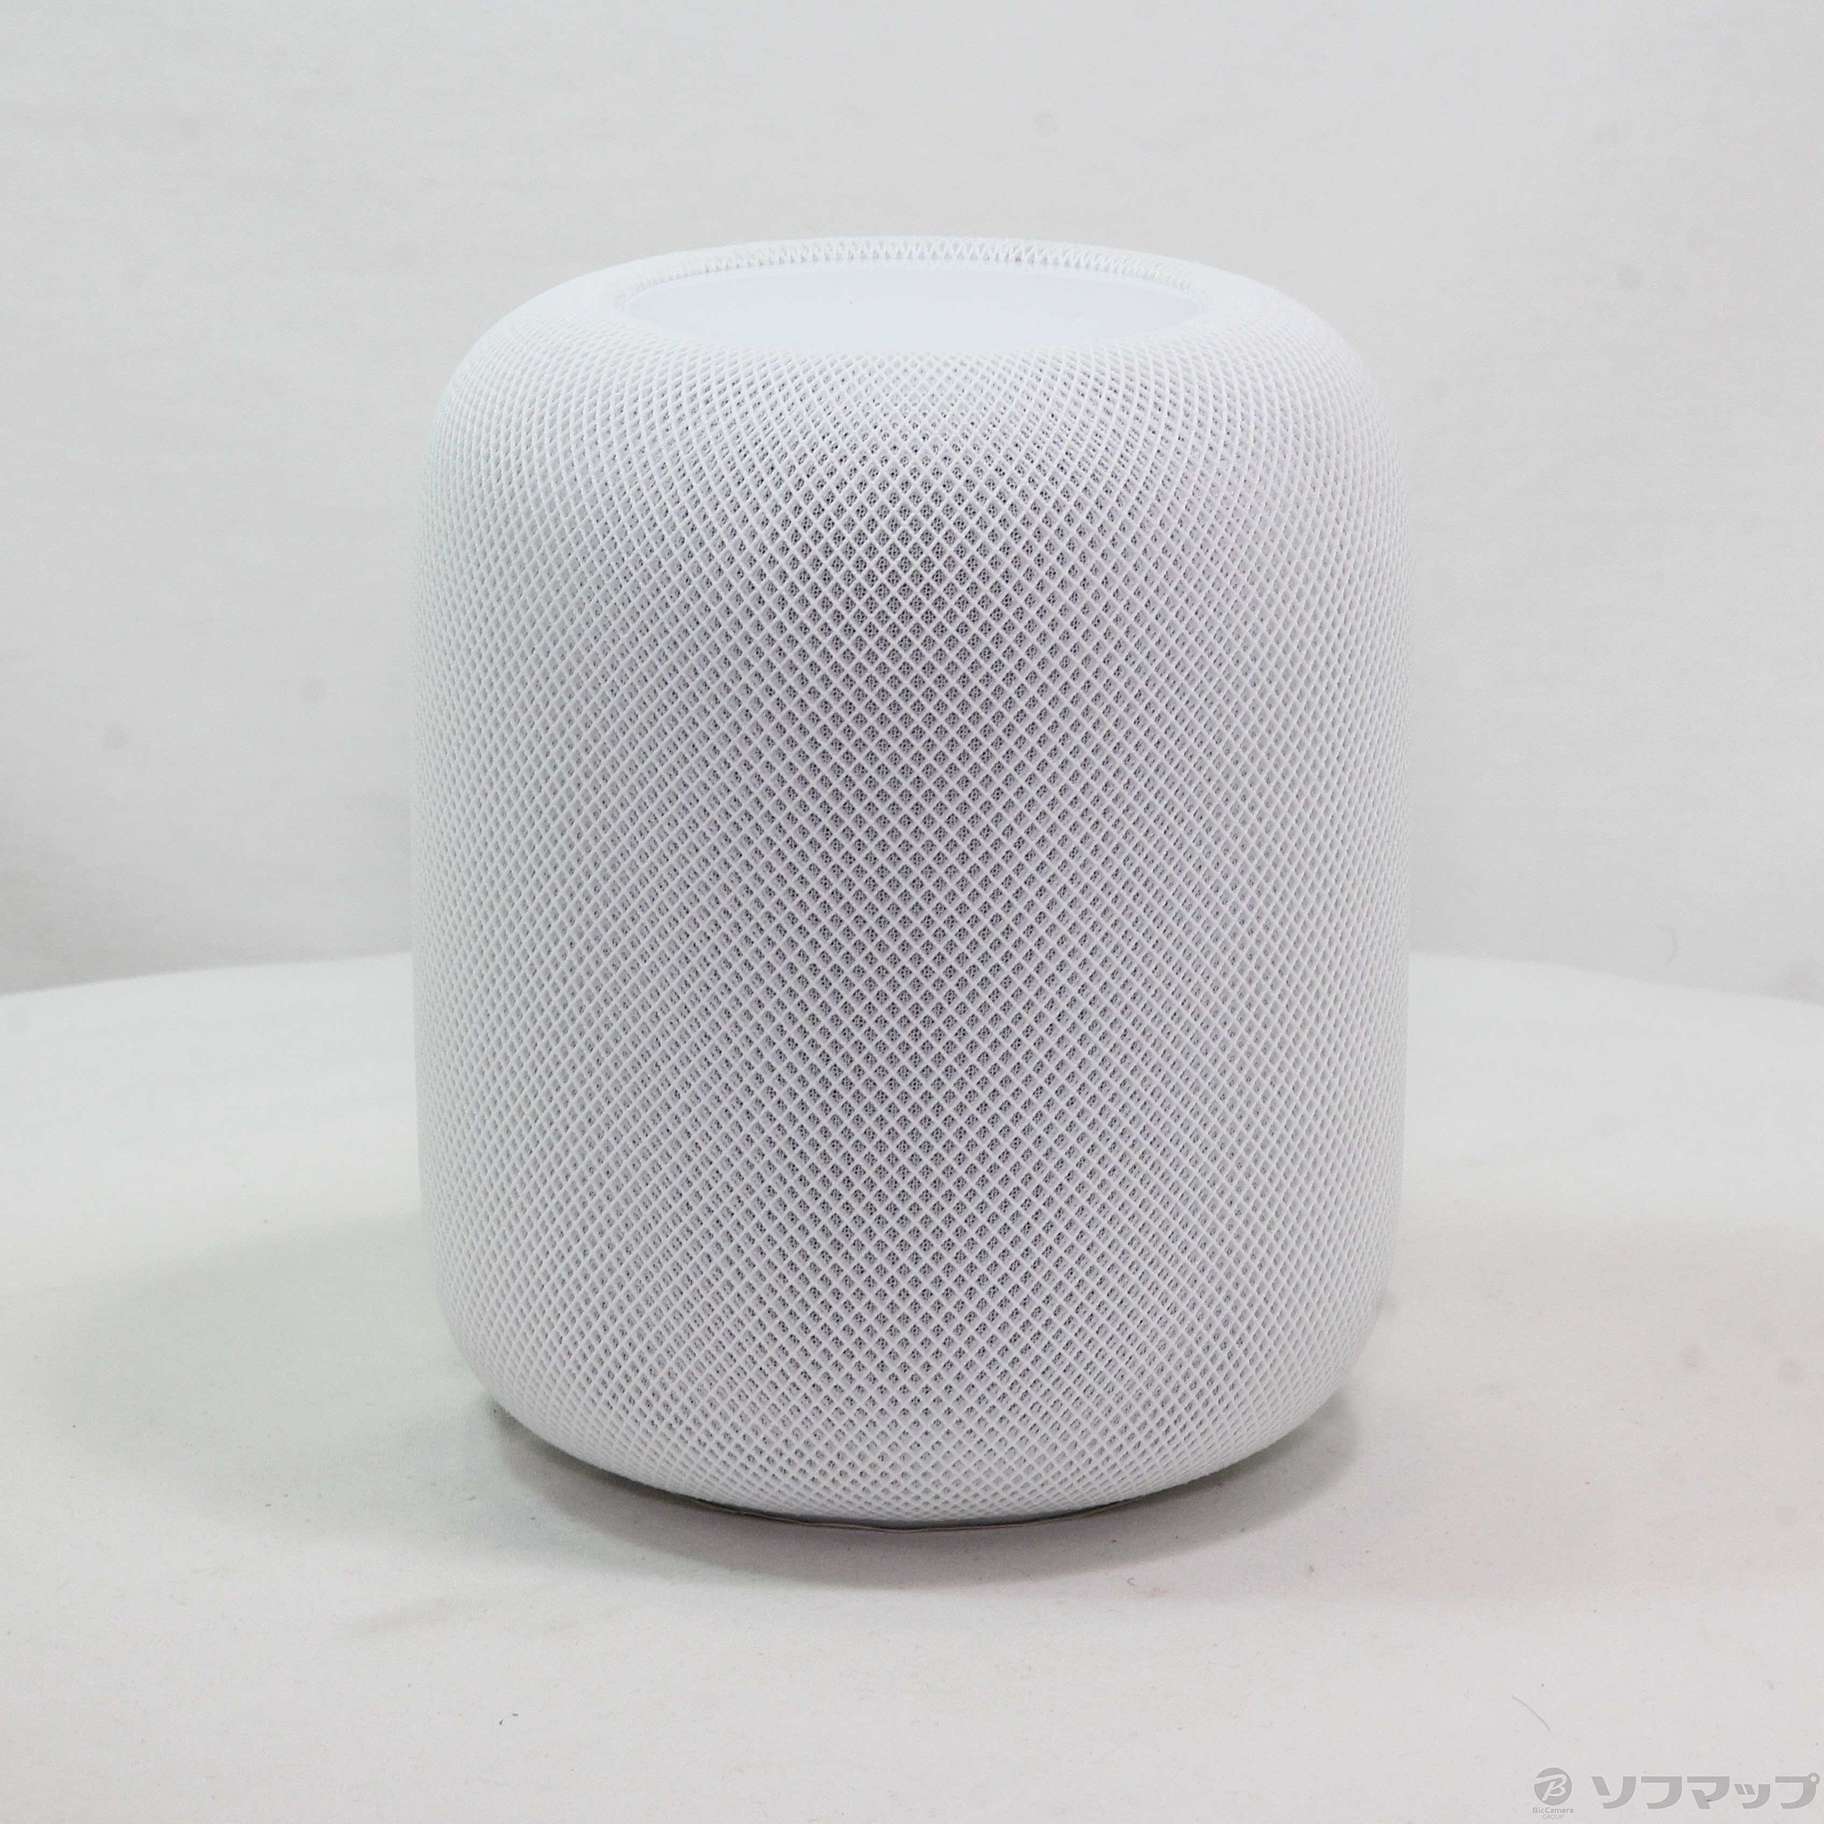 アップル【新品未開封】 【14日までの限定価格】HomePod 第2世代 ホワイト